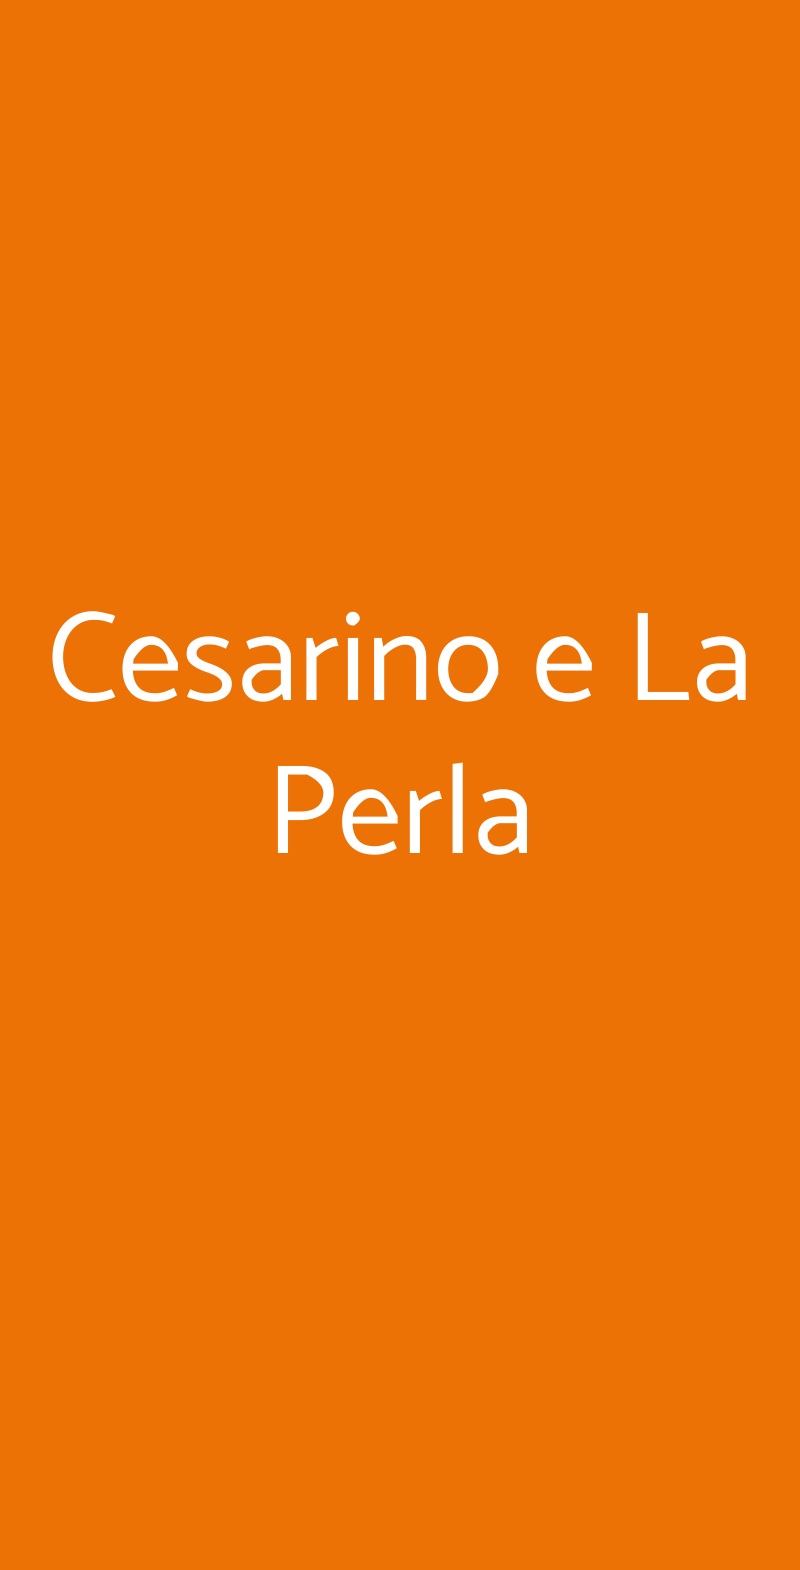 Cesarino e La Perla Ciampino menù 1 pagina